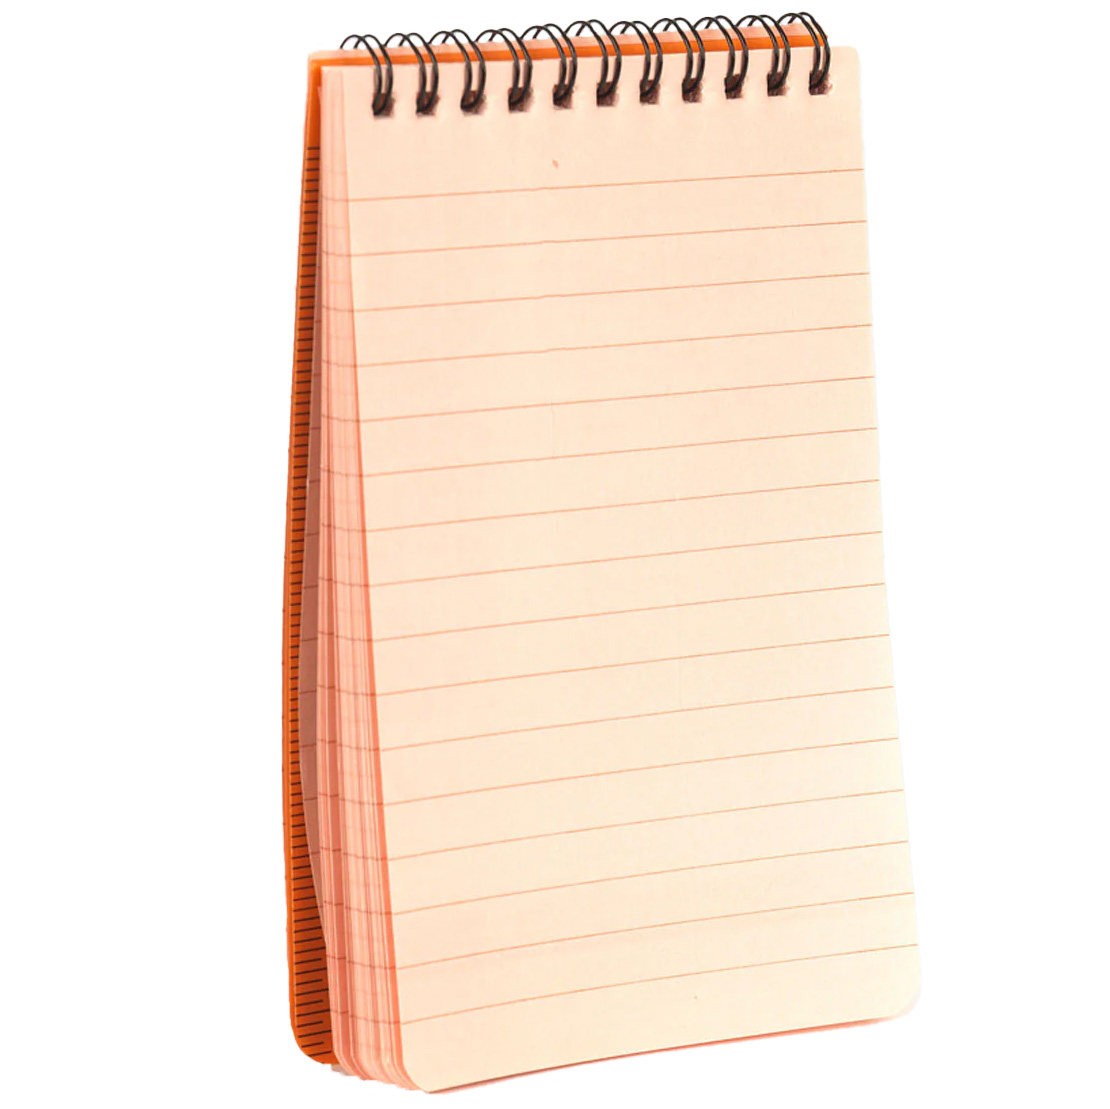 Snugpak Water Resistant Notebook Travel Journal